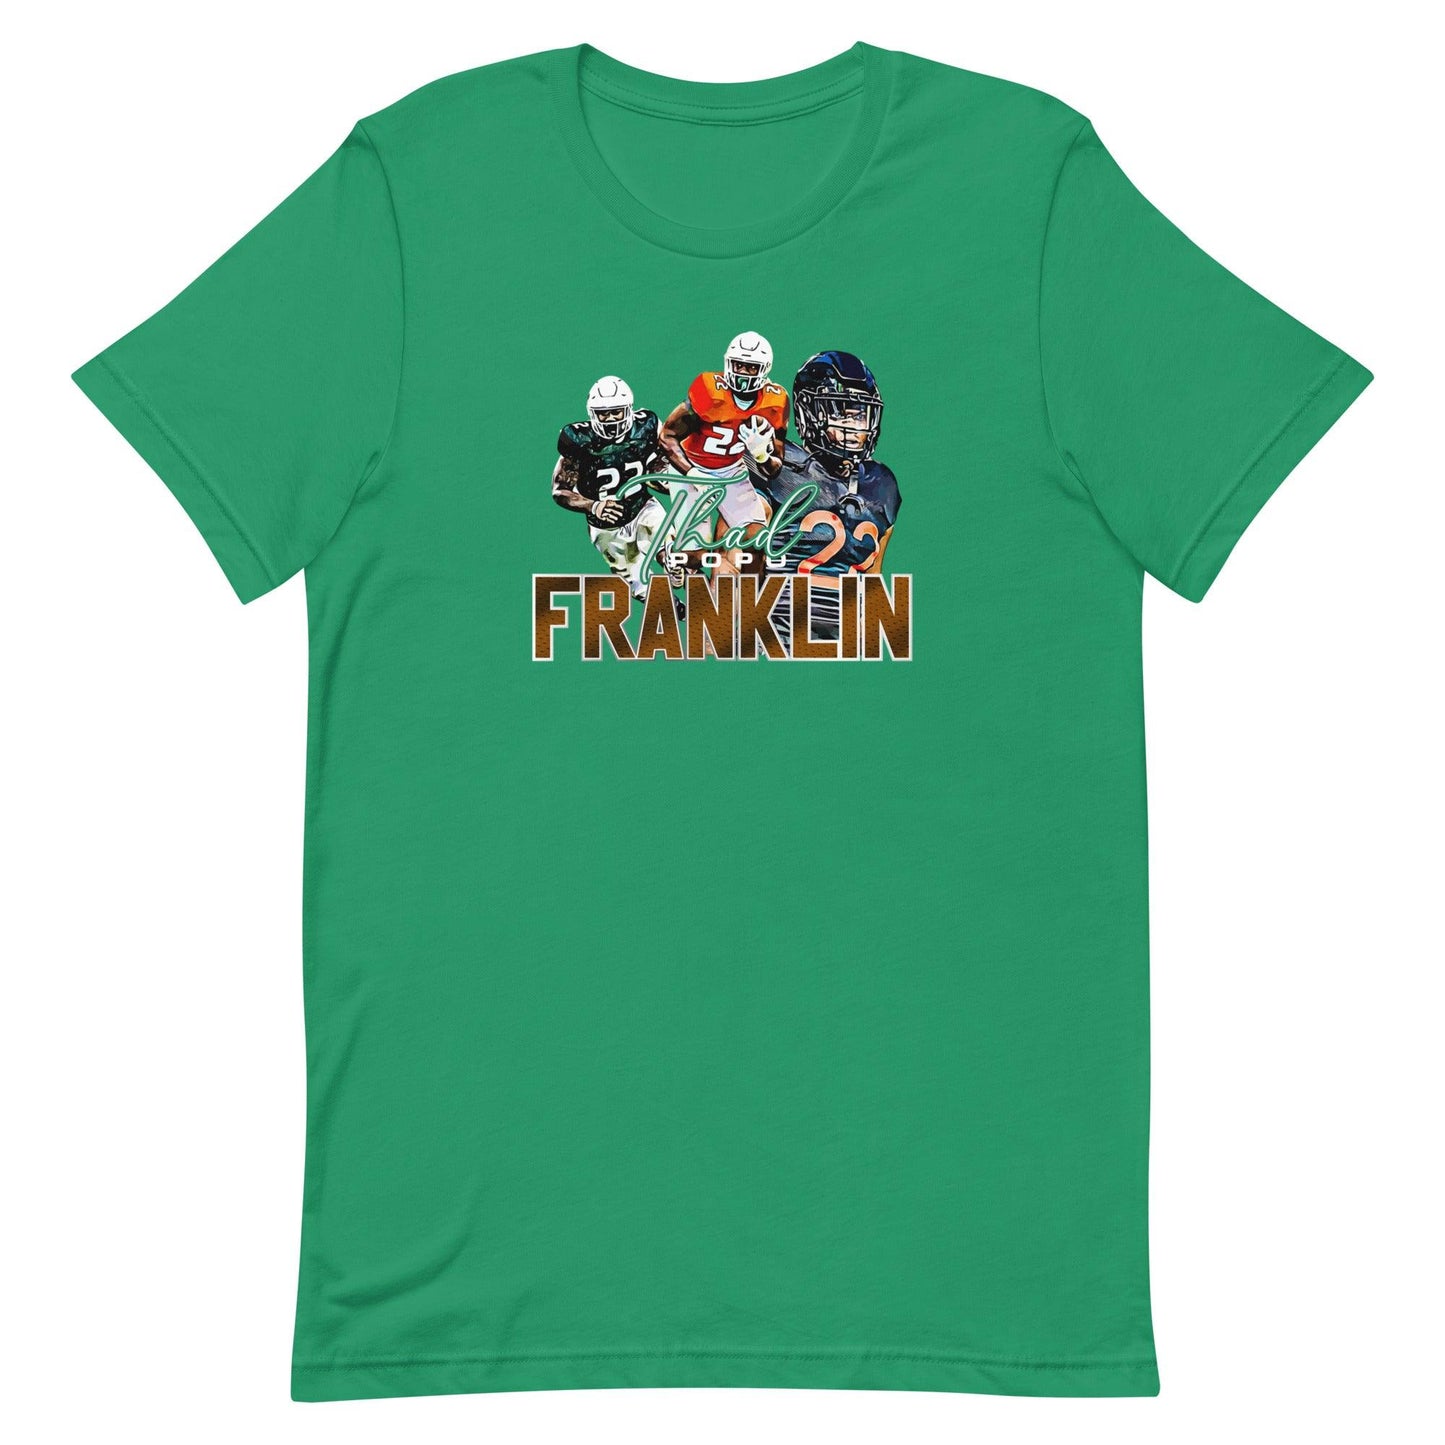 Thad Franklin "Limited Edition" t-shirt - Fan Arch